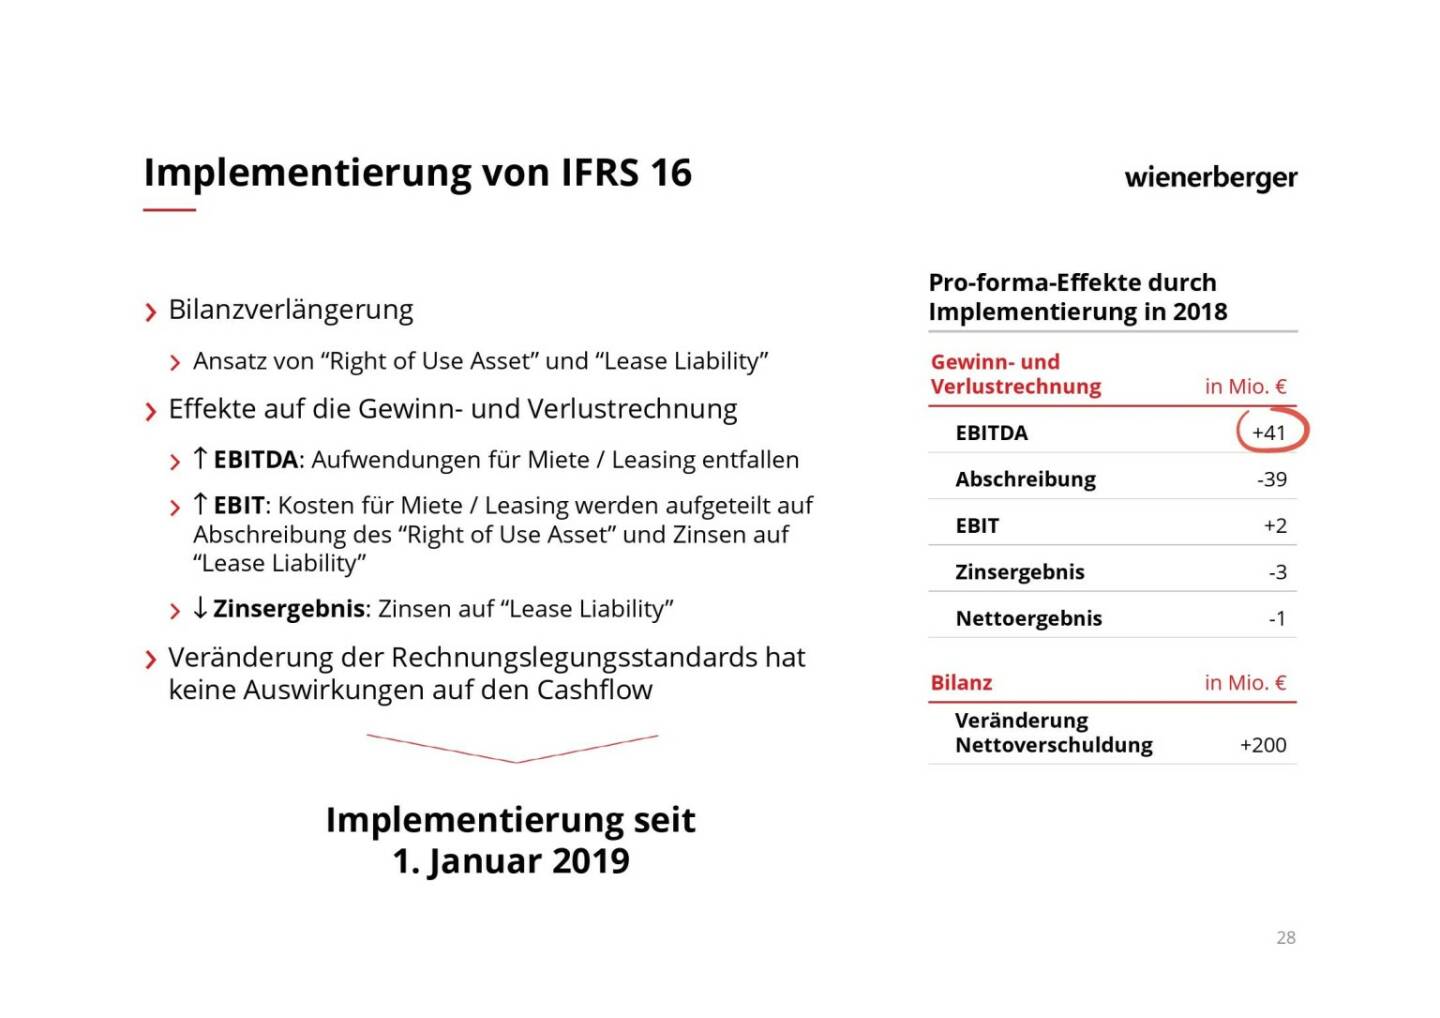 Wienerberger - Implementierung von IFRS 16